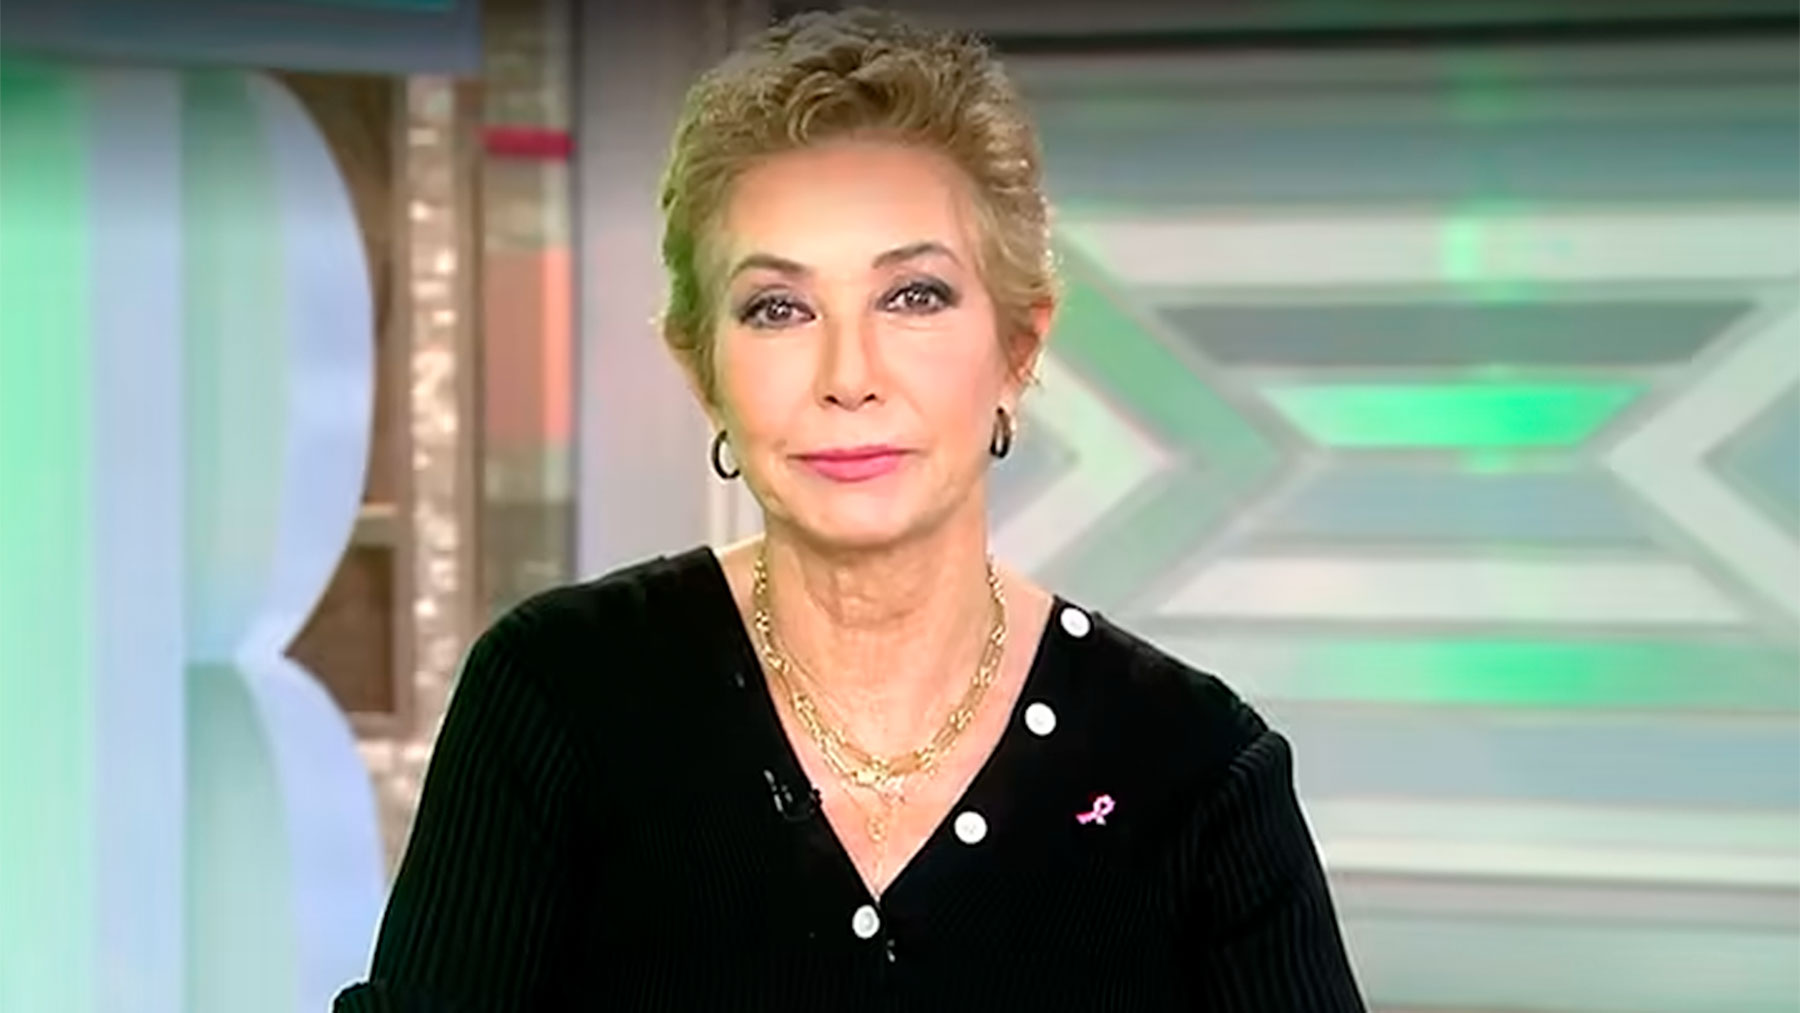 Ana Rosa Quintana, durante su programa / Mediaset